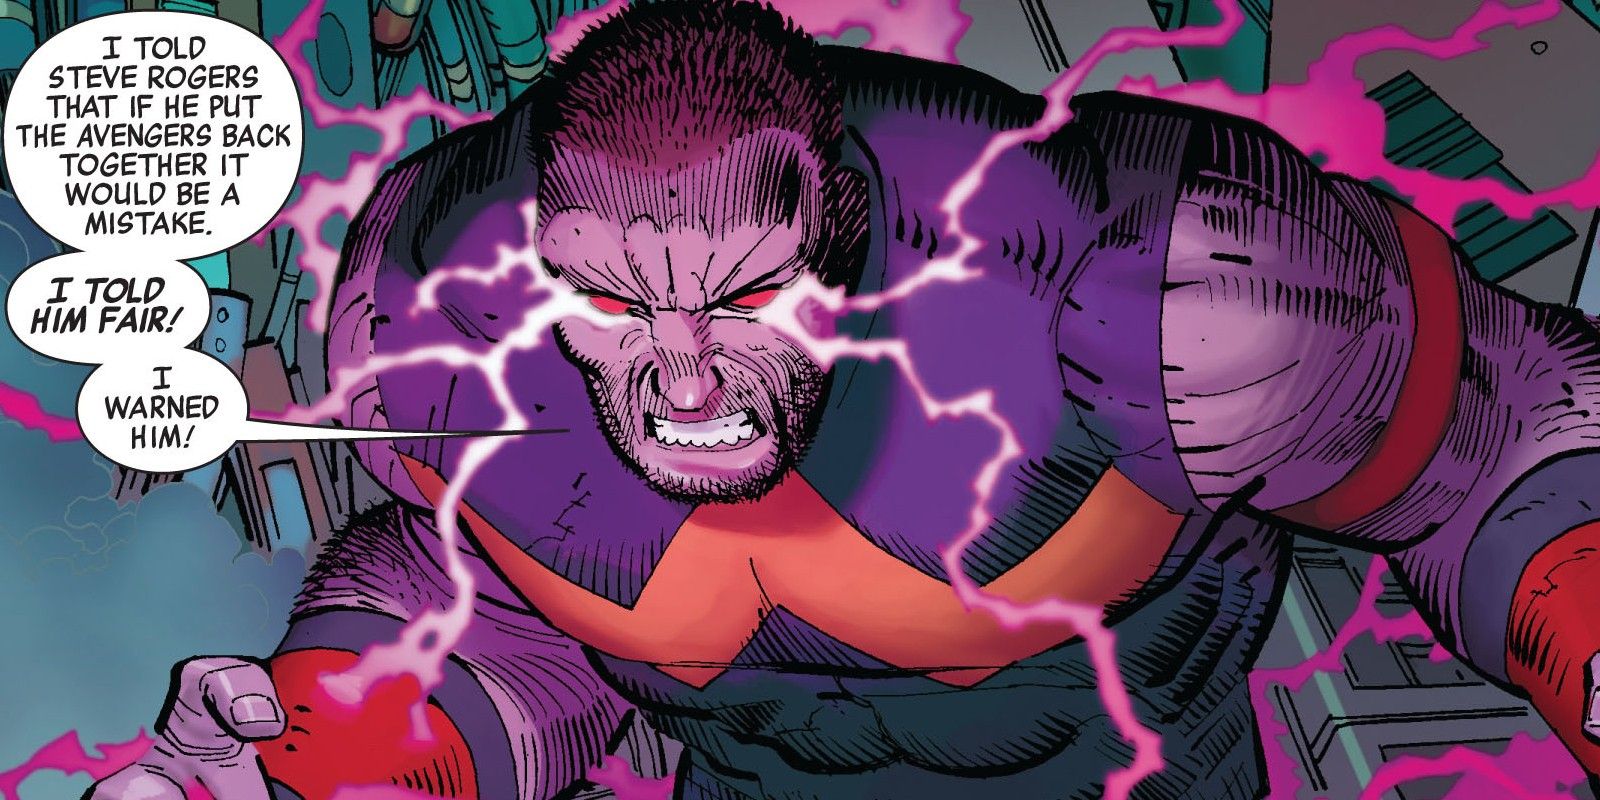 Wonder Man Fighting the Avengers in 2010's Avengers #2